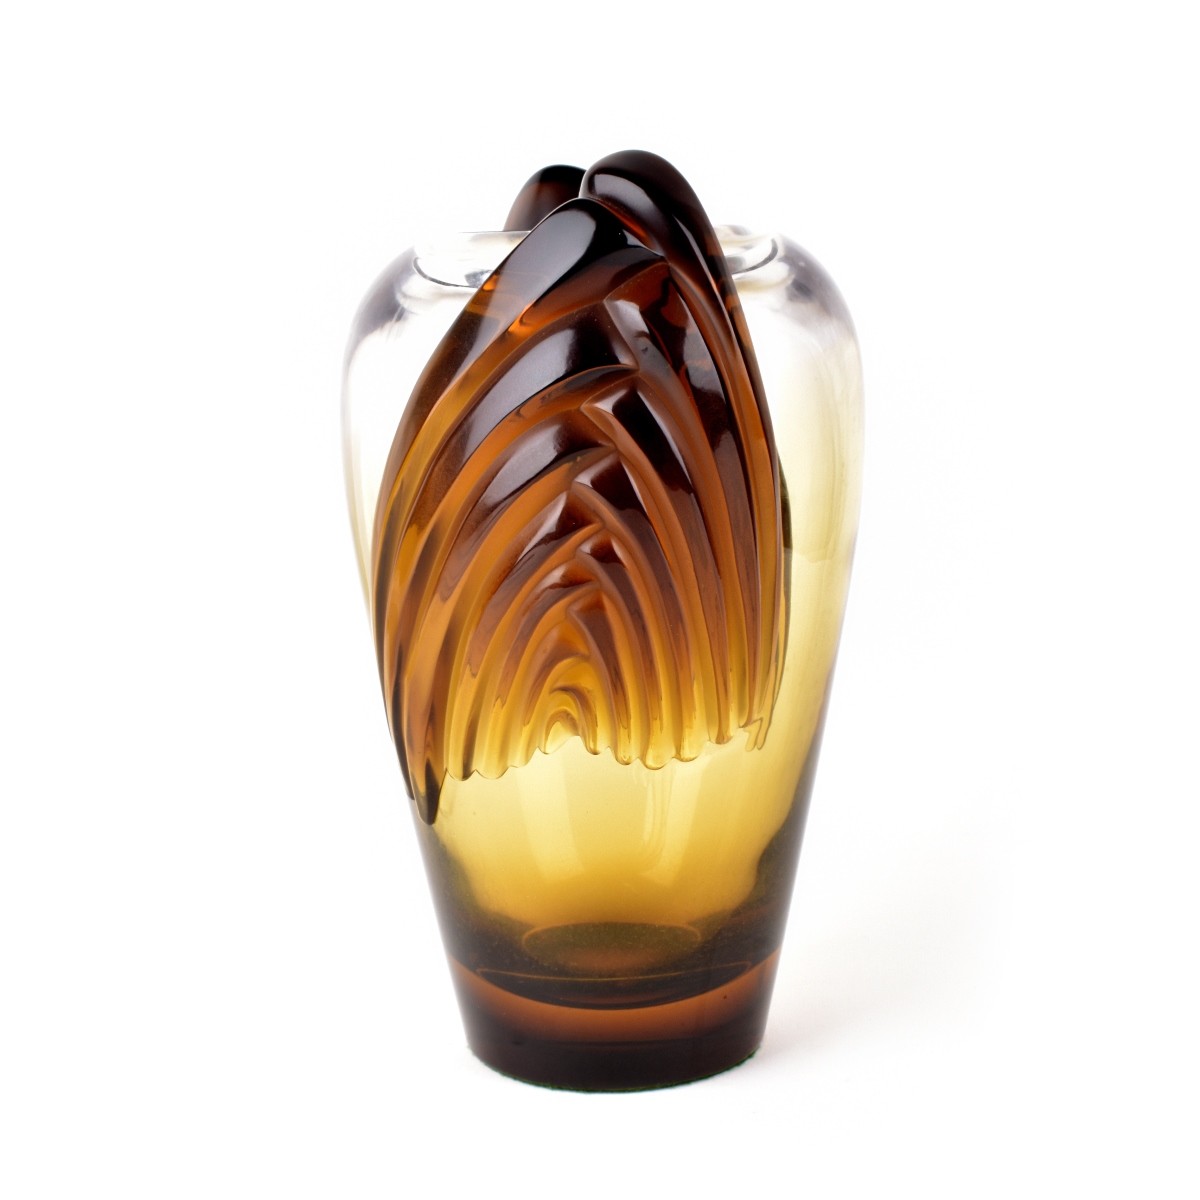 Lalique "Marrakech" Vase